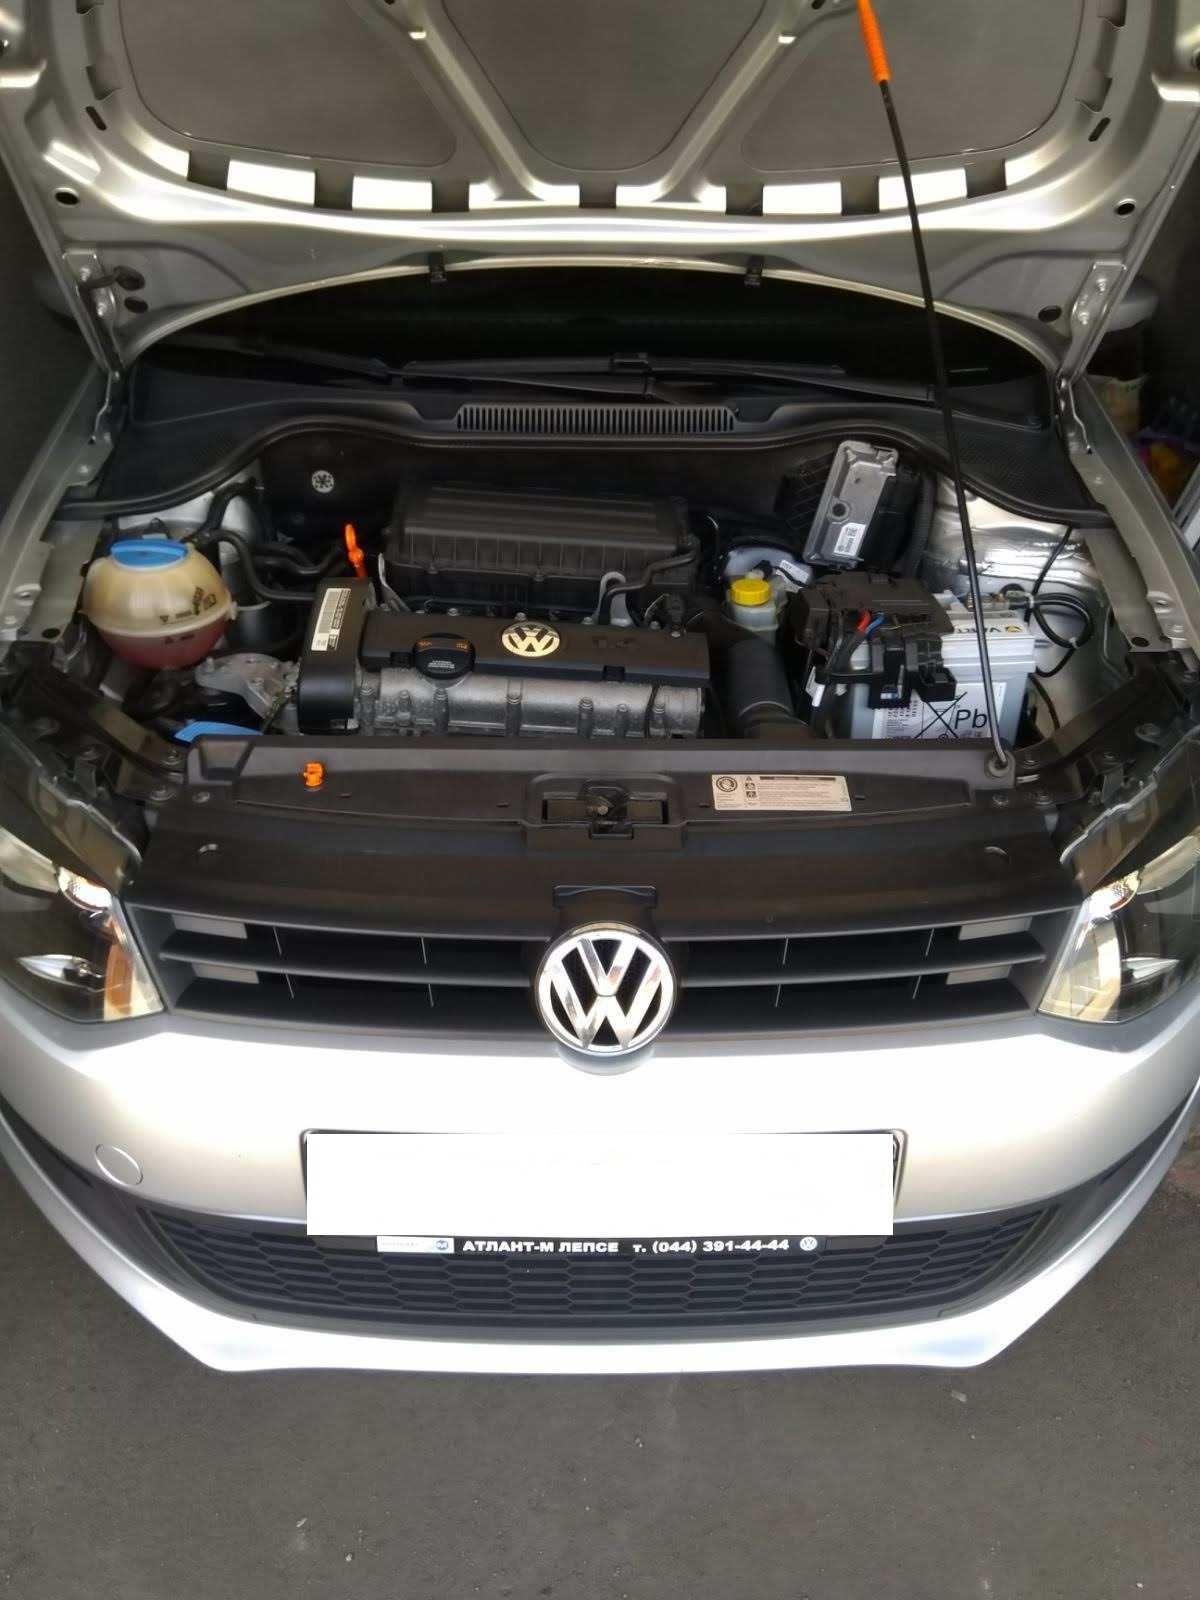 Volkswagen Polo A5, продам в хорошие руки